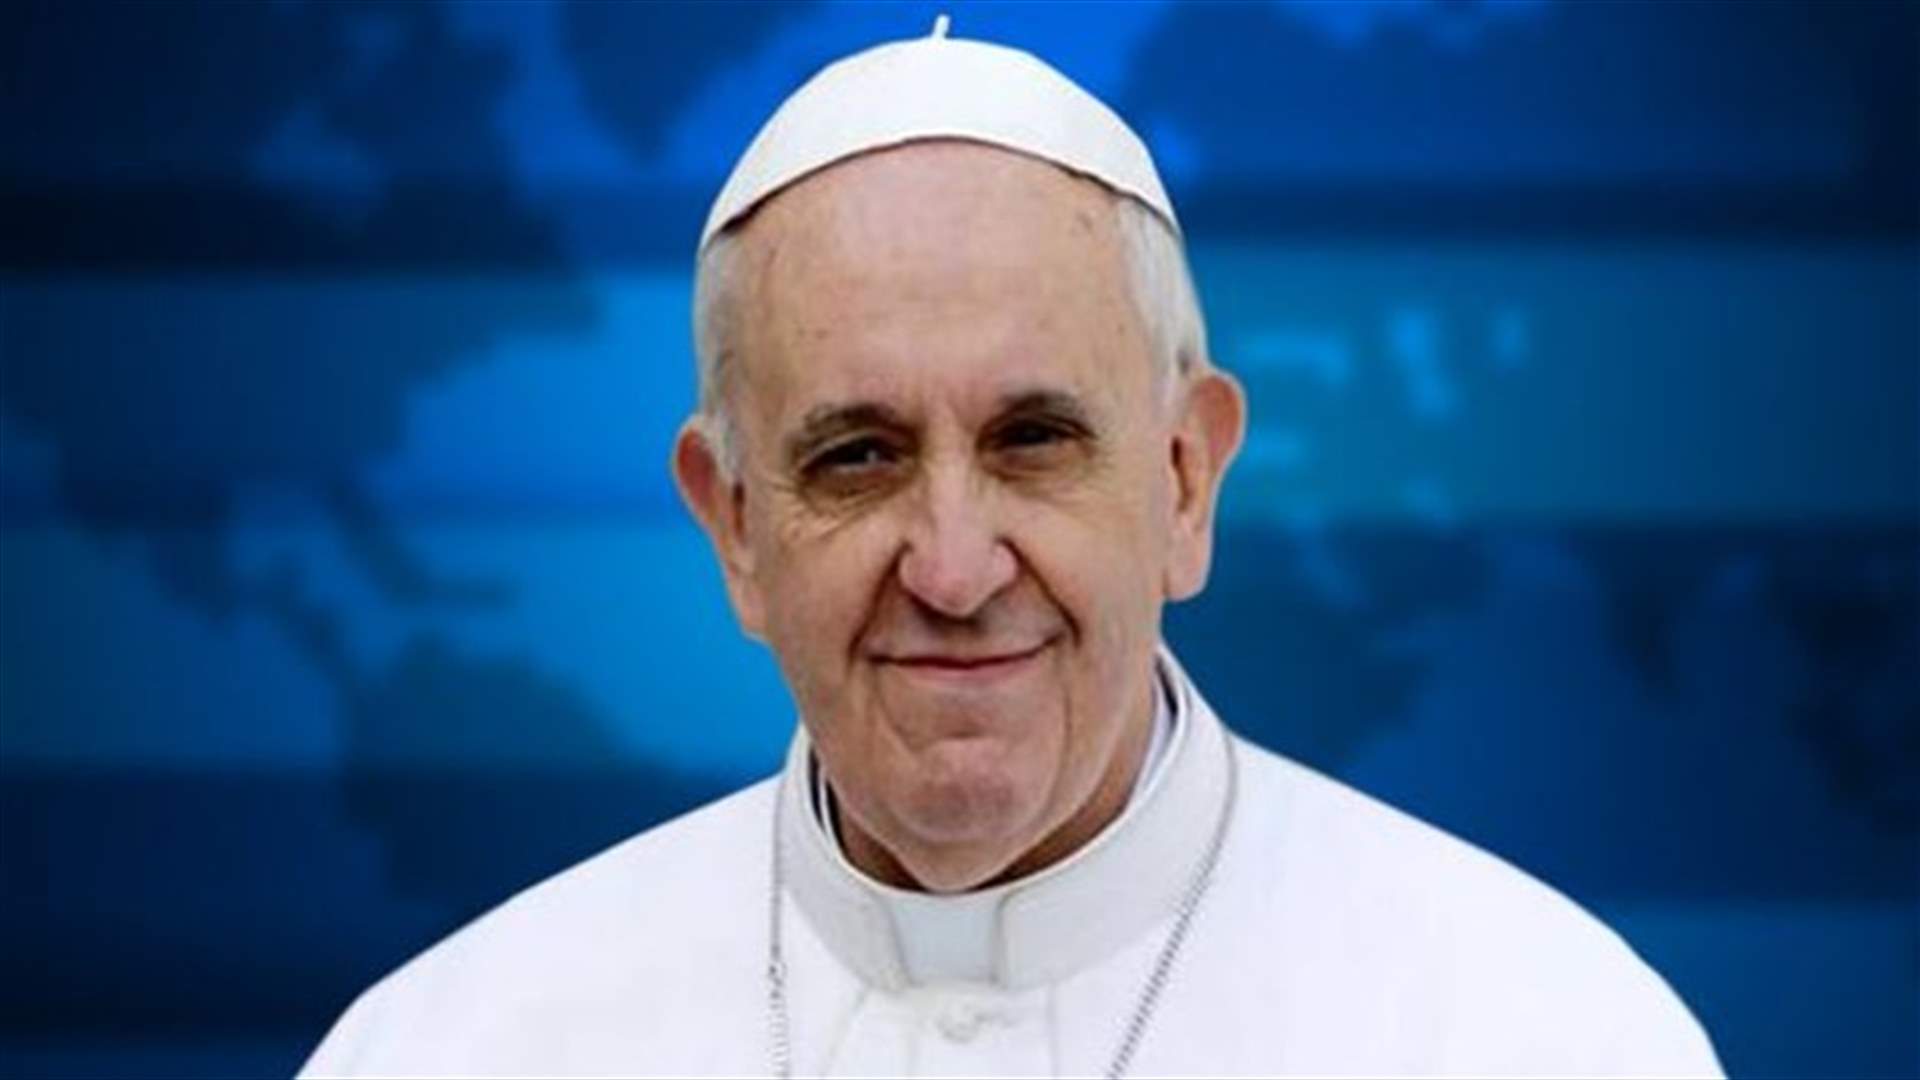 البابا فرنسيس يتوقع وفاته بعد سنتين او ثلاث